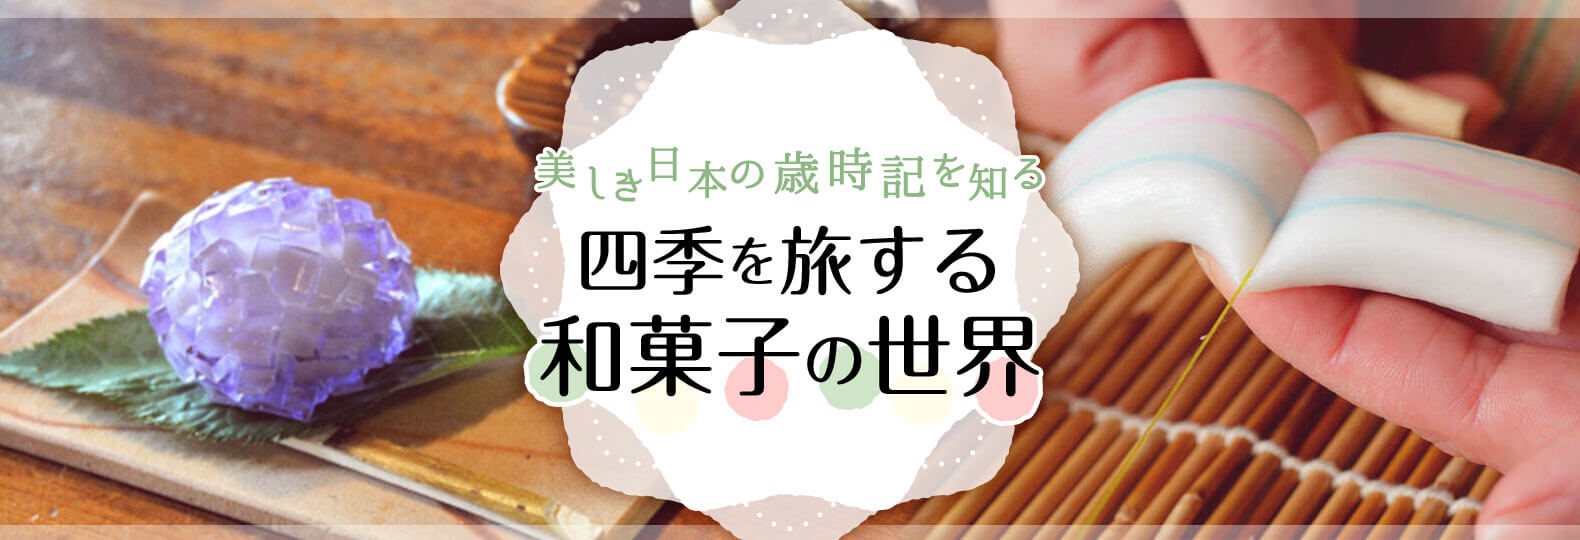 美しき日本の歳時記を知る 四季を旅する和菓子の世界